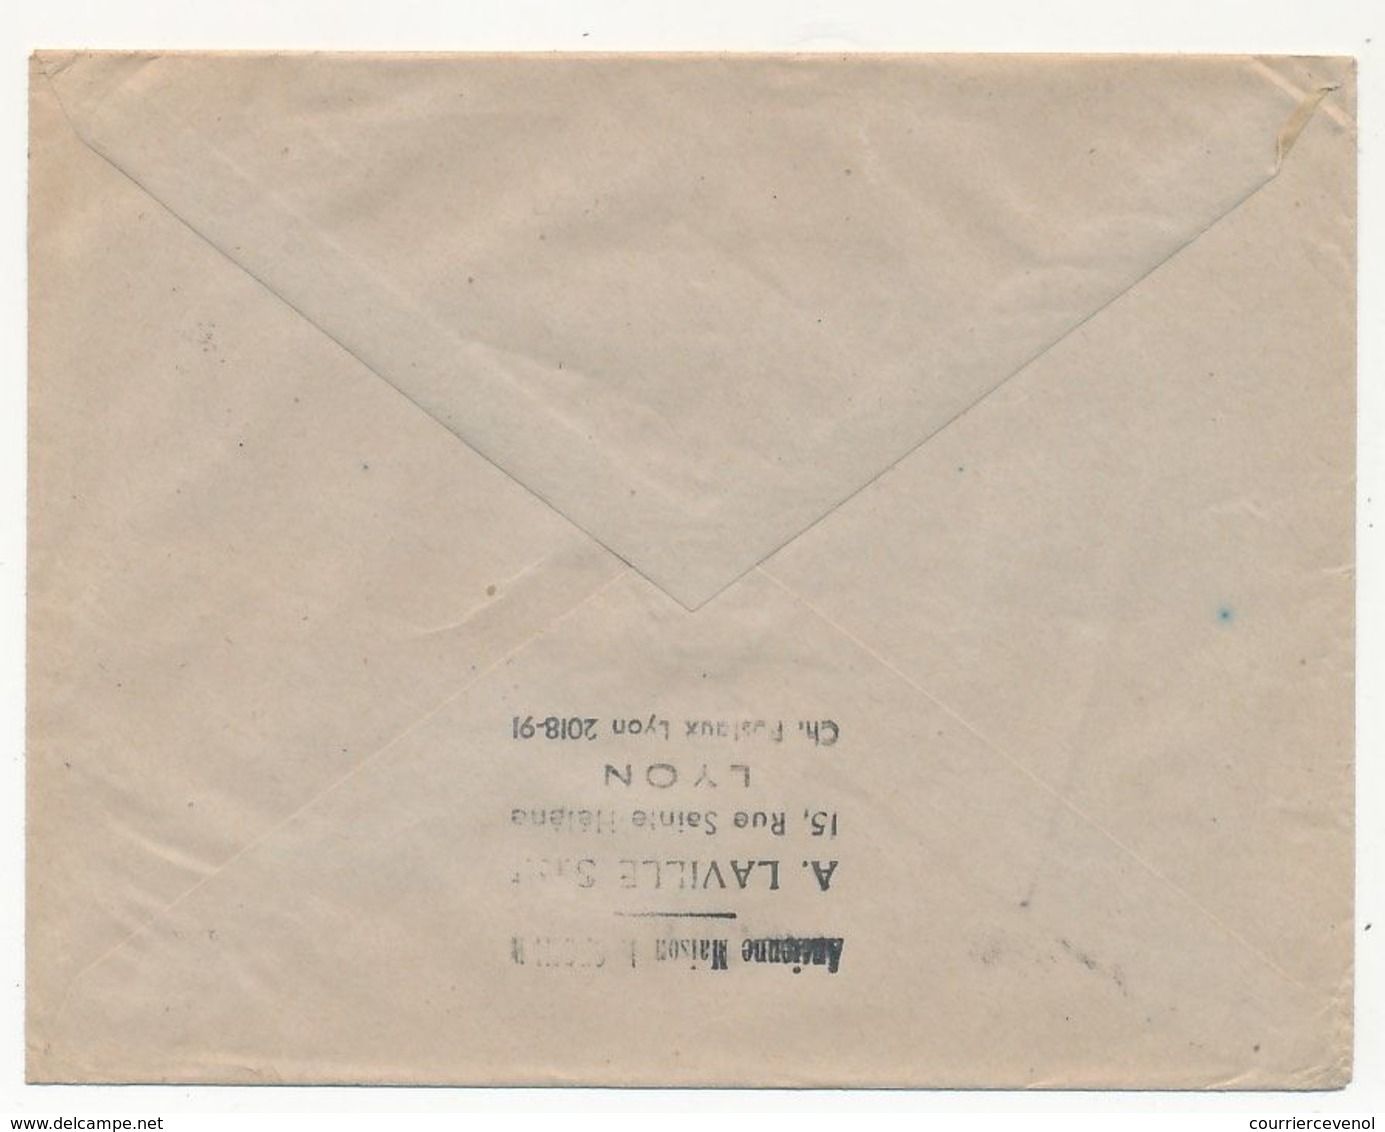 FRANCE - Enveloppe Affr. Composé 4F Dulac + 2x50c Mercure - Tassin La Demi-Lune (Rhône) - 1950 - 1944-45 Marianne De Dulac